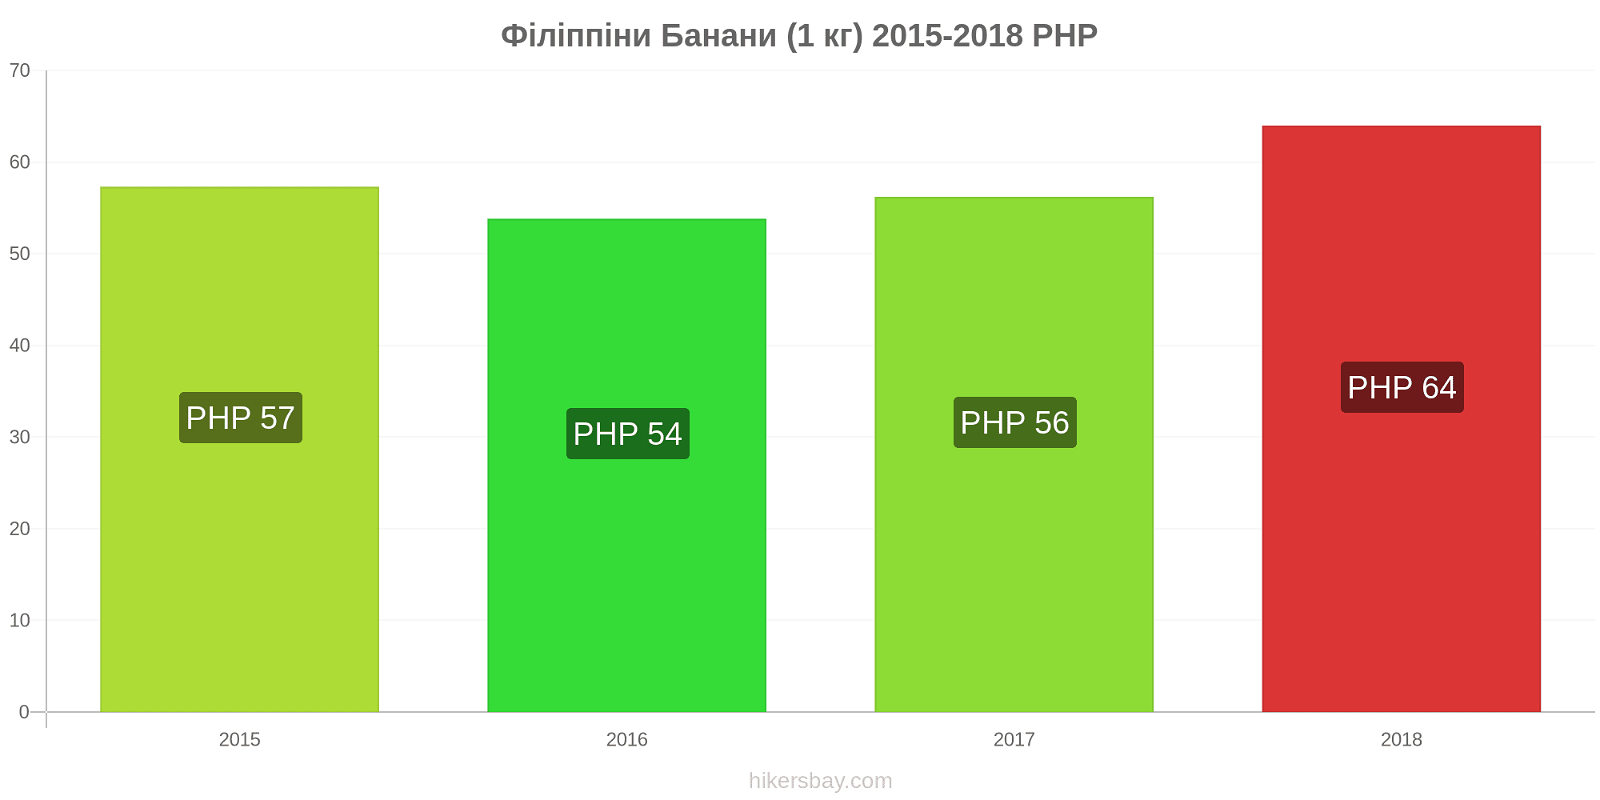 Філіппіни зміни цін Банани (1 кг) hikersbay.com